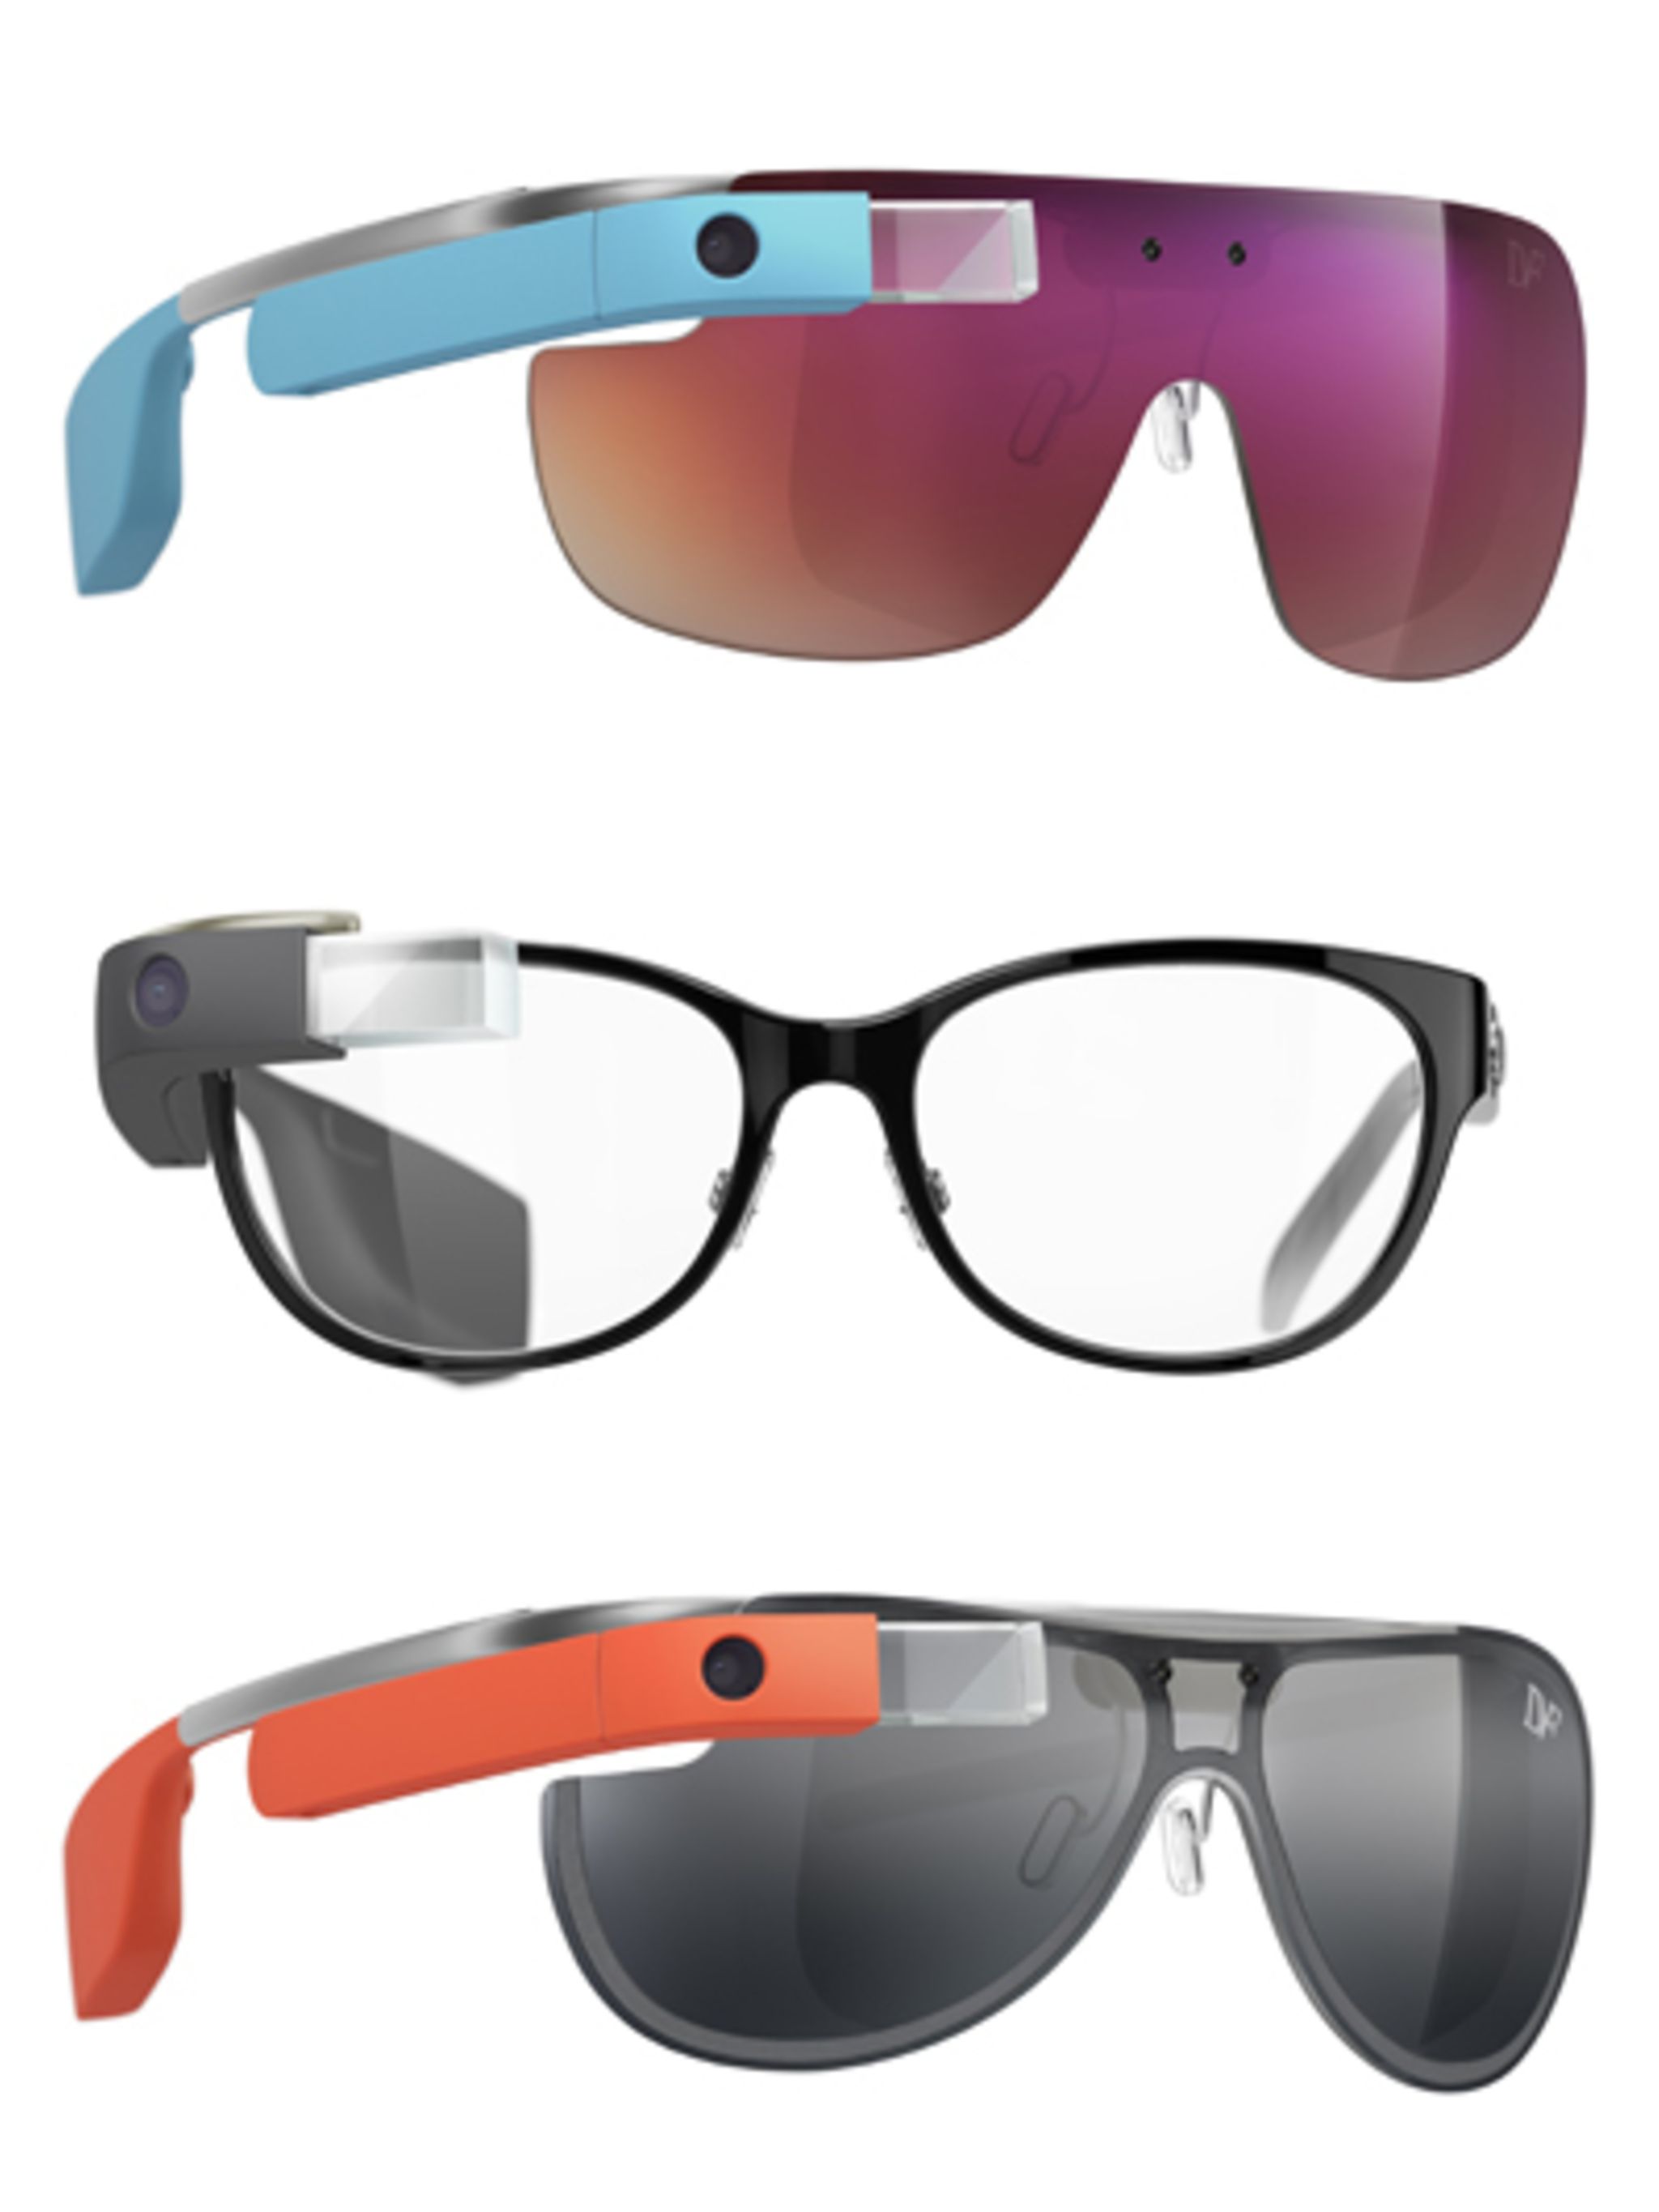 voor eeuwig meest onderwijzen Het oog wil ook wat: designervarianten op Google Glass